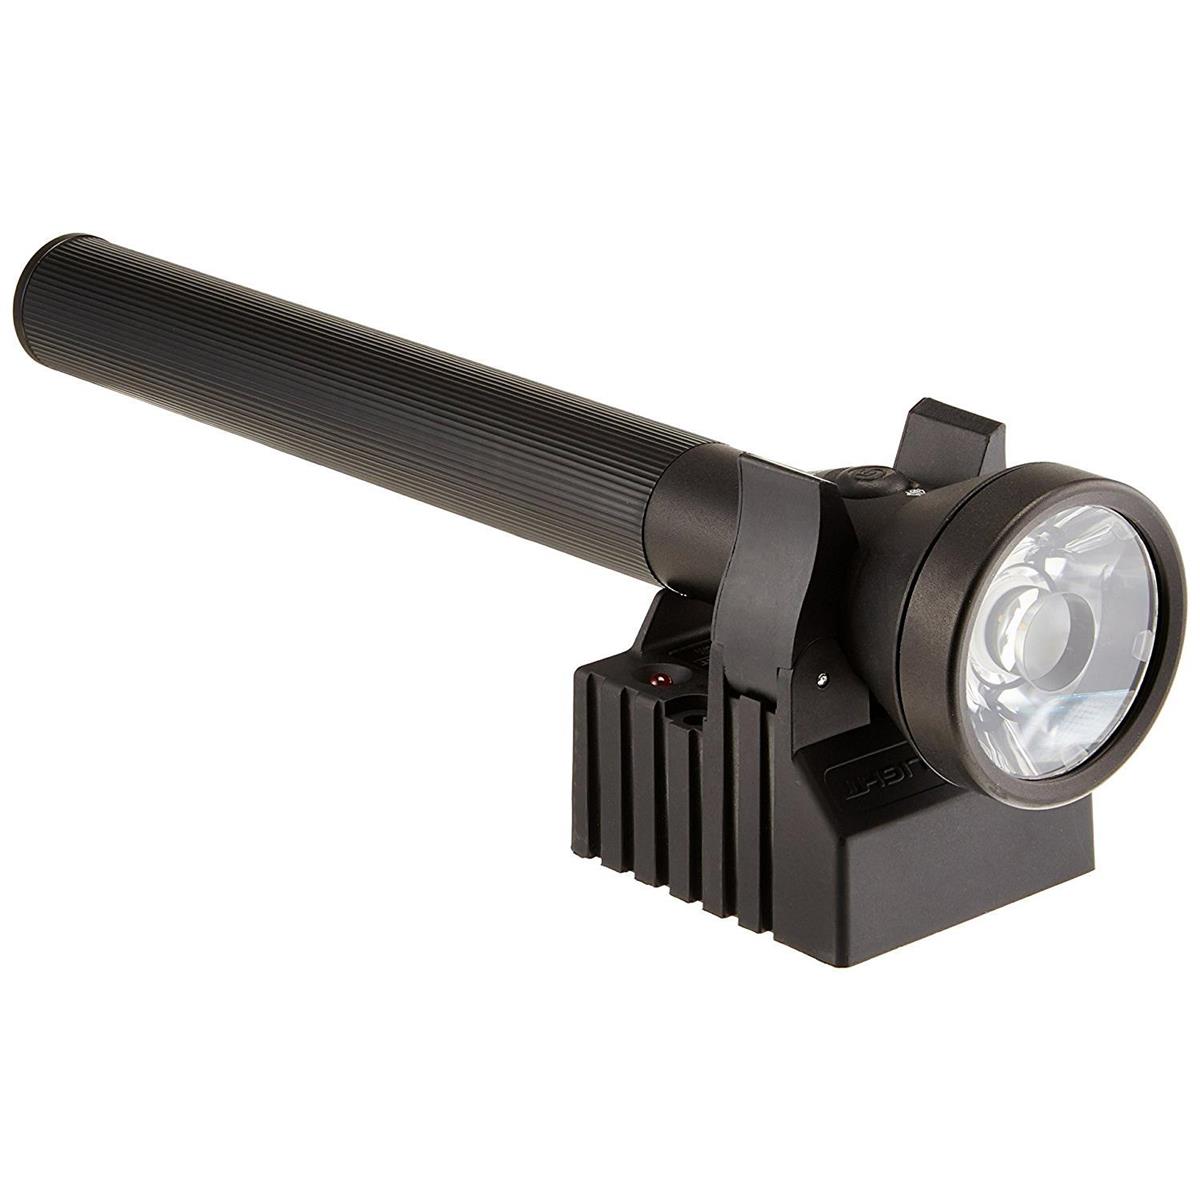 Image of Streamlight UltraStinger LED Flashlight